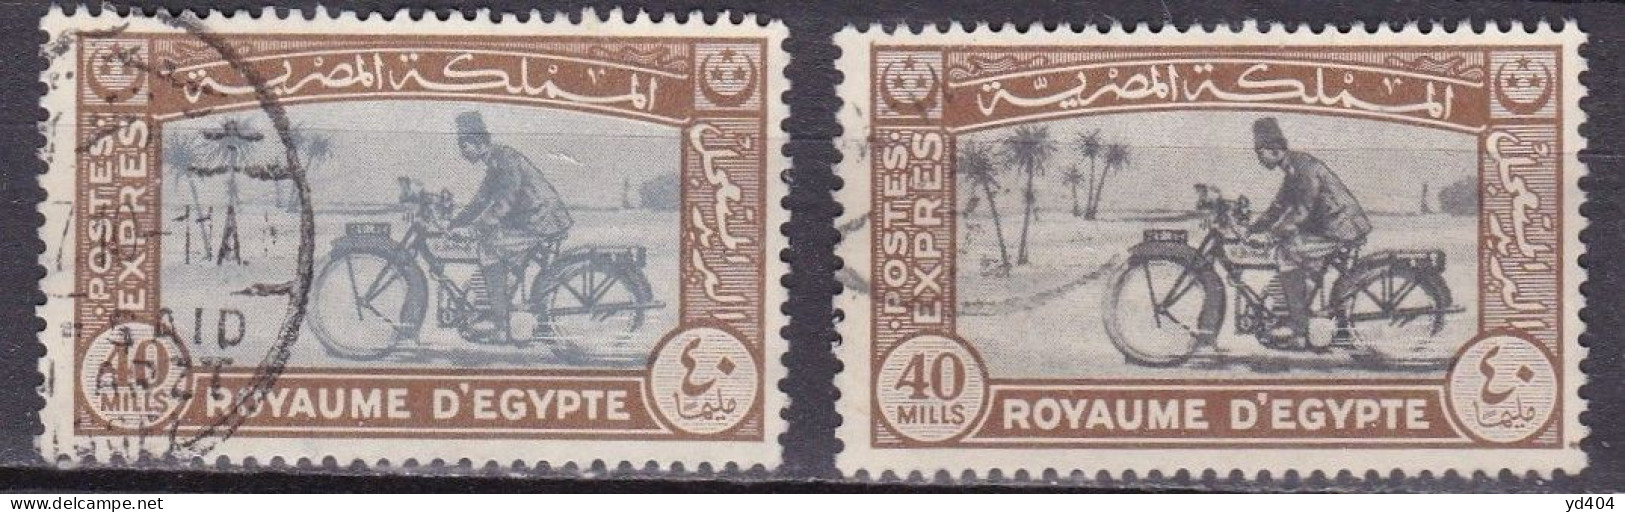 EG905 – EGYPTE – EGYPT – EXPRESS – 1944 – MOTORCYCLE POSTMAN – Y&T # 4(x2) USED 12 € - Oblitérés